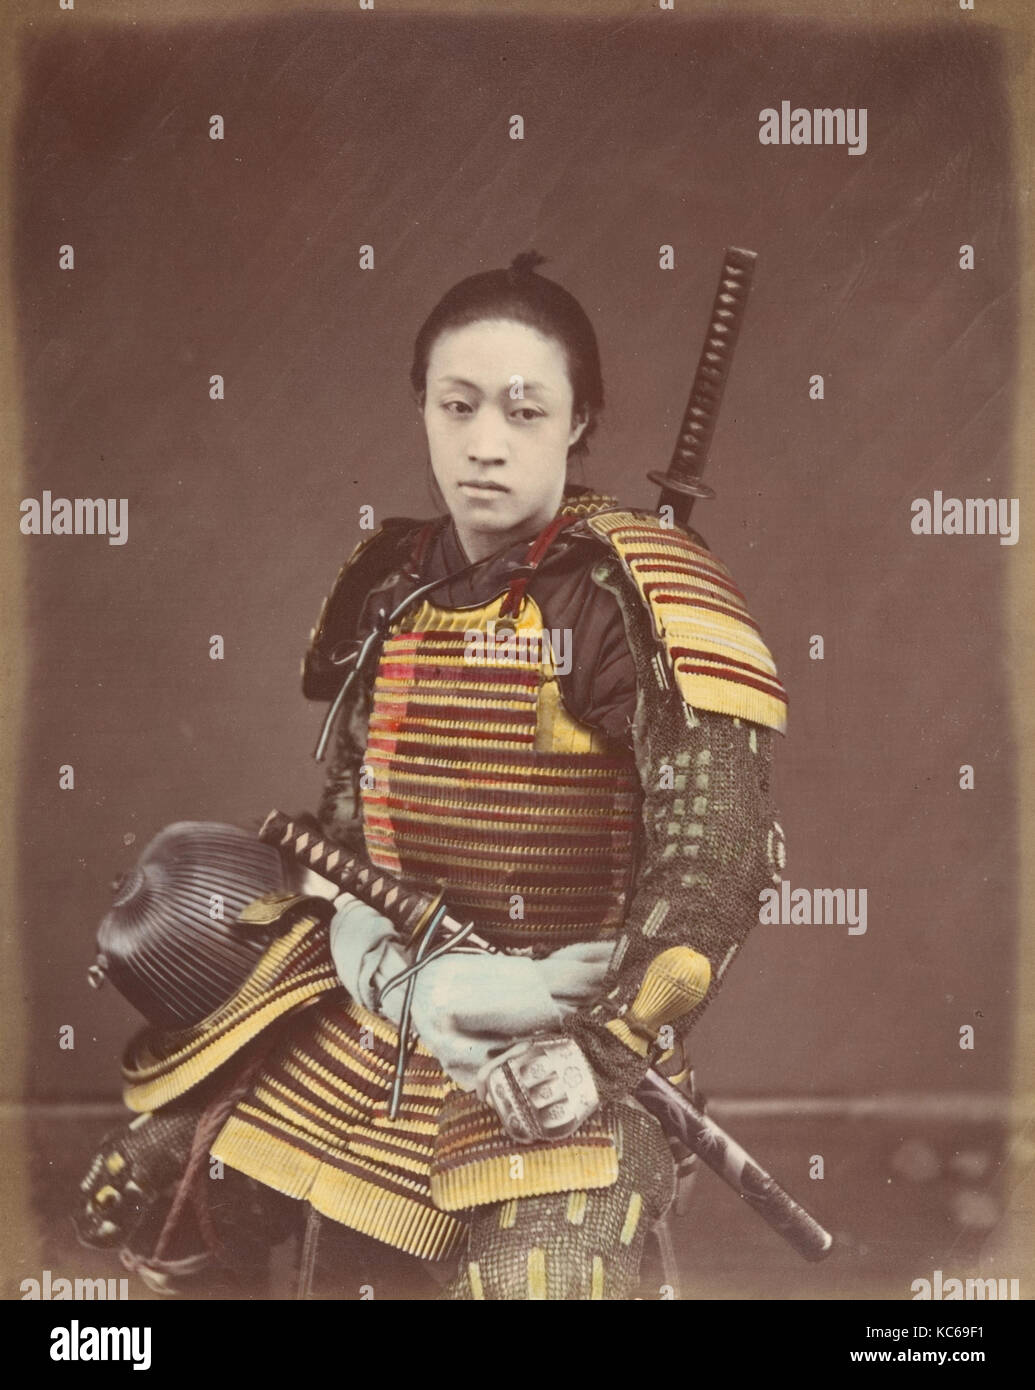 Schauspieler in Samurai Rüstung, 1870s, Eiklar silber Drucken aus Glas negativ, 24,6 x 18,9 cm (9 11/16 x 7 7/16 in.), Fotografien Stockfoto